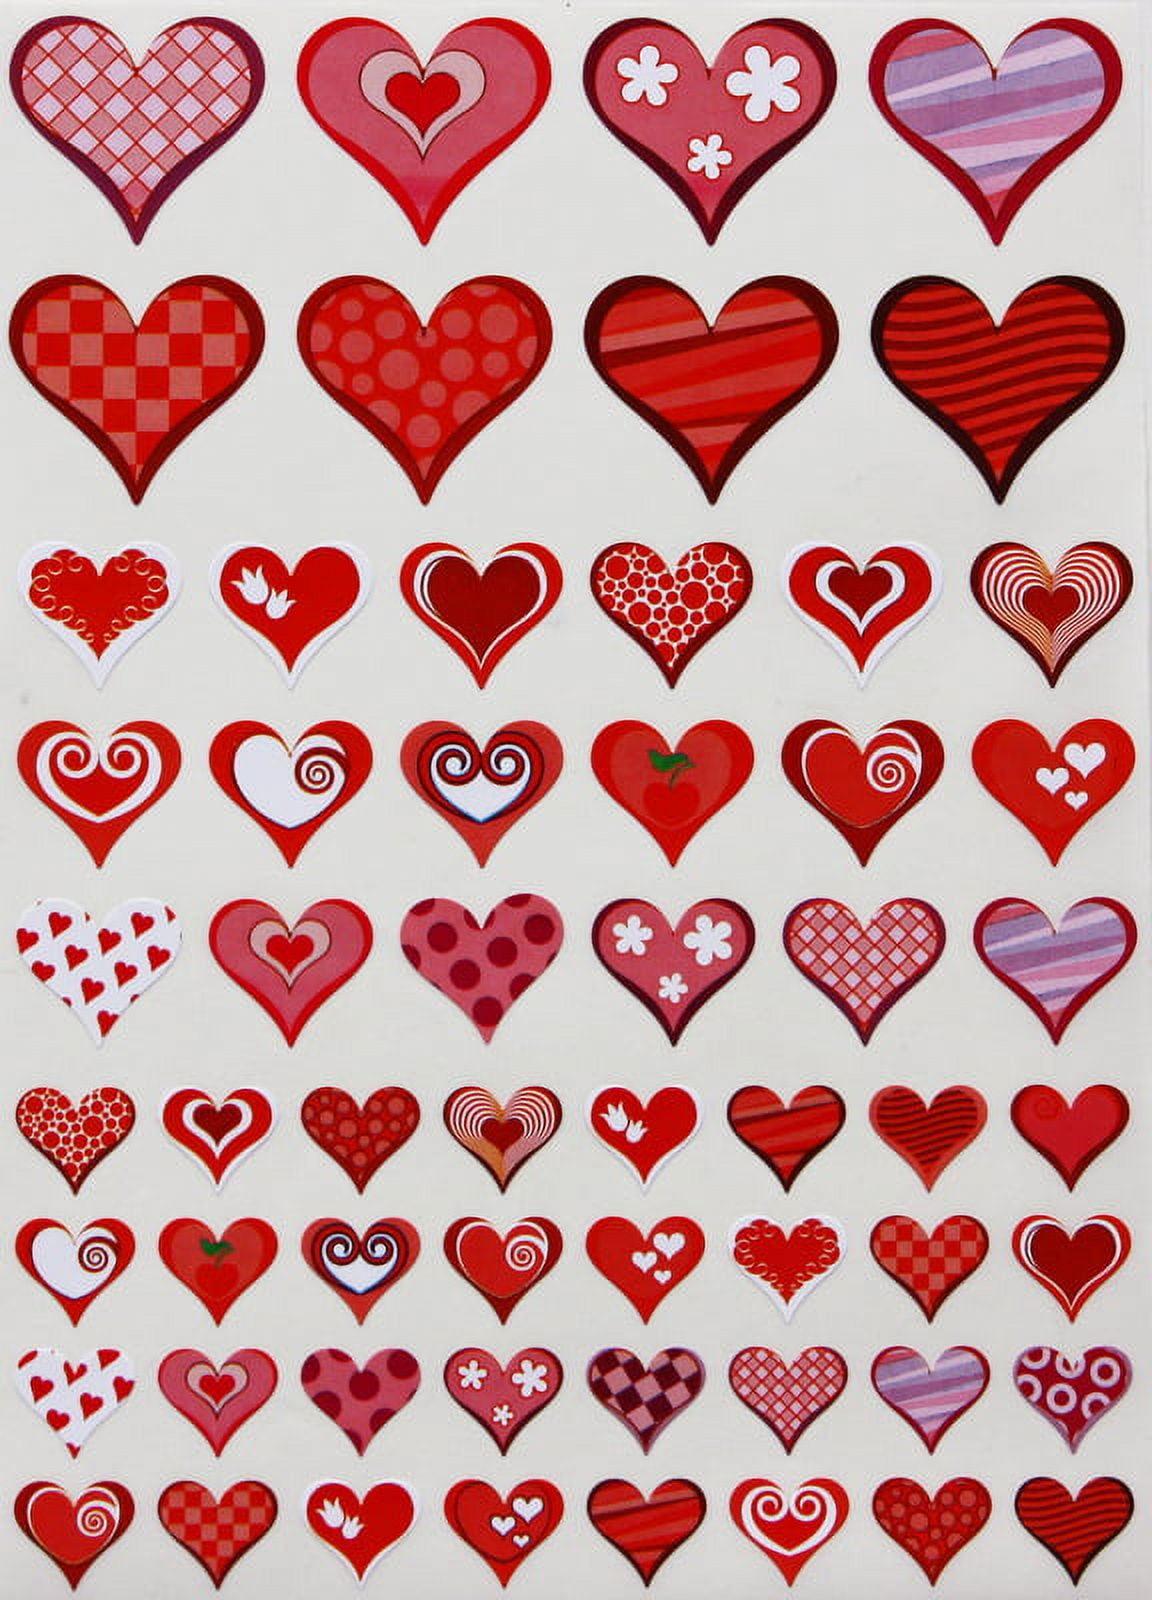 Colorful Hearts - Sticker